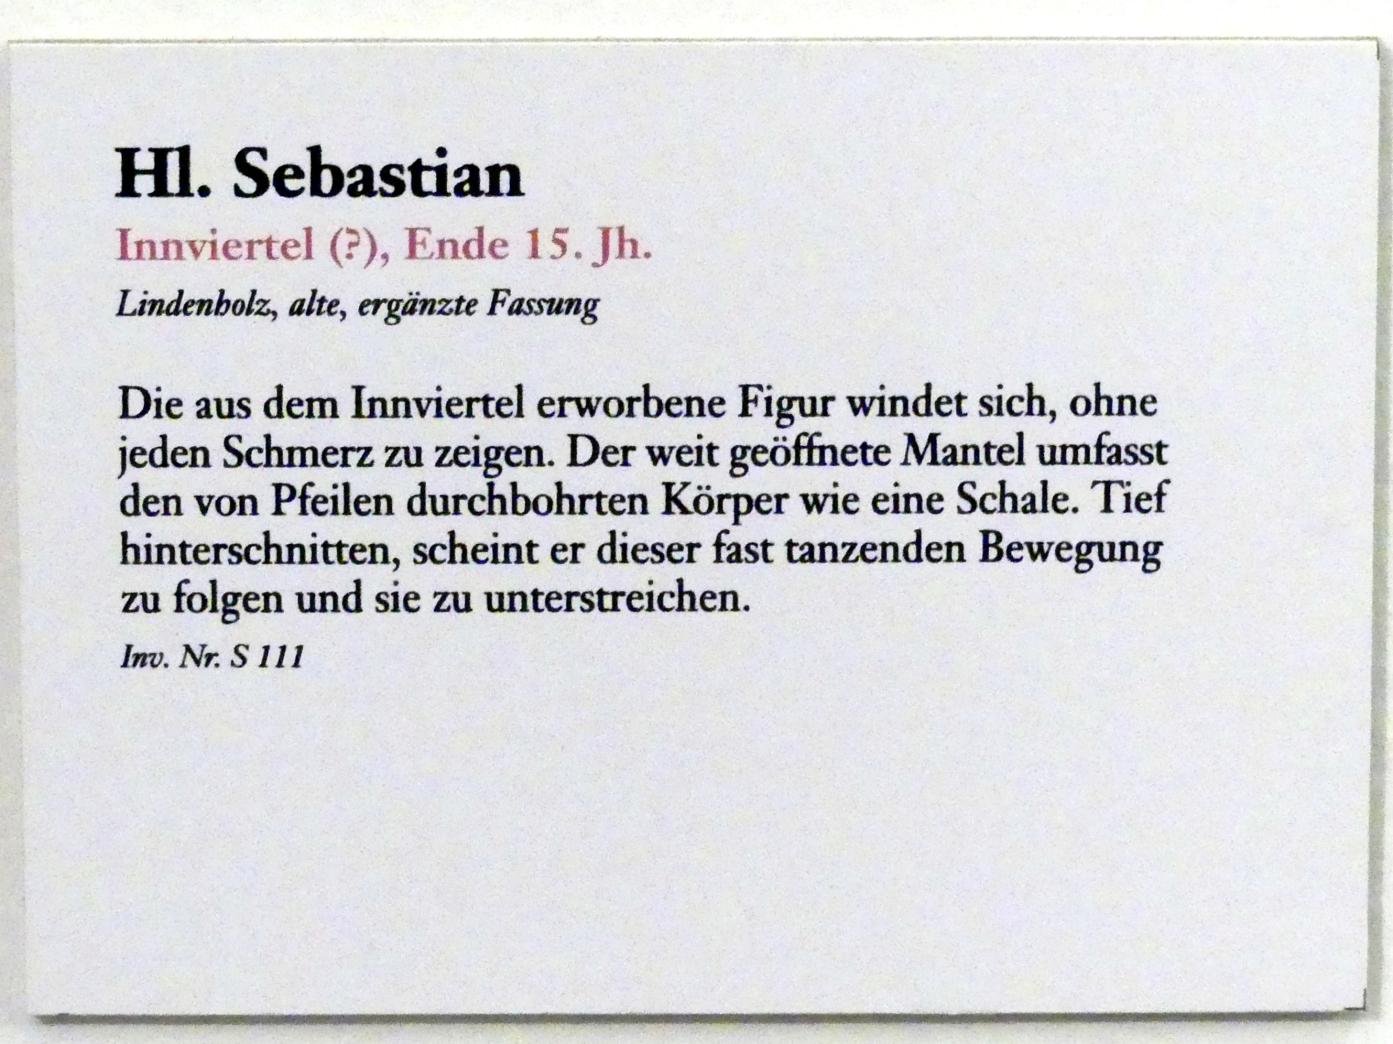 Hl. Sebastian, Linz, Oberösterreichisches Landesmuseum, Blüte der Spätgotik, Ende 15. Jhd., Bild 3/3